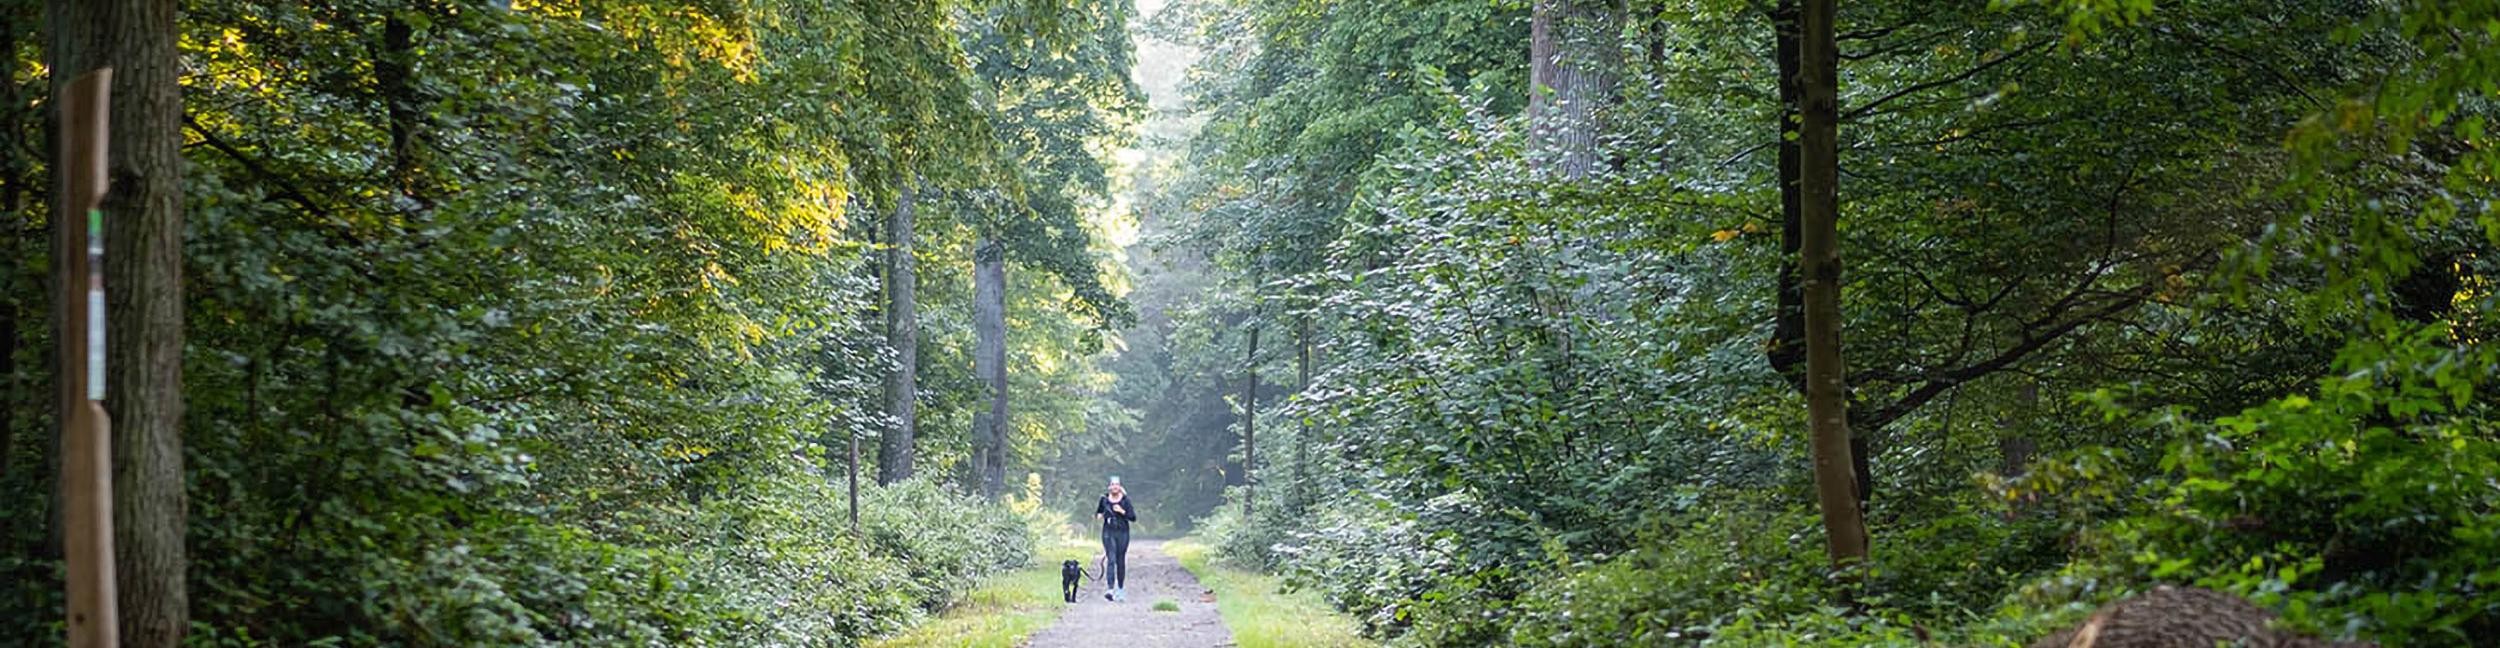 Forêt d'Öitgheim avec promeneuse et chien